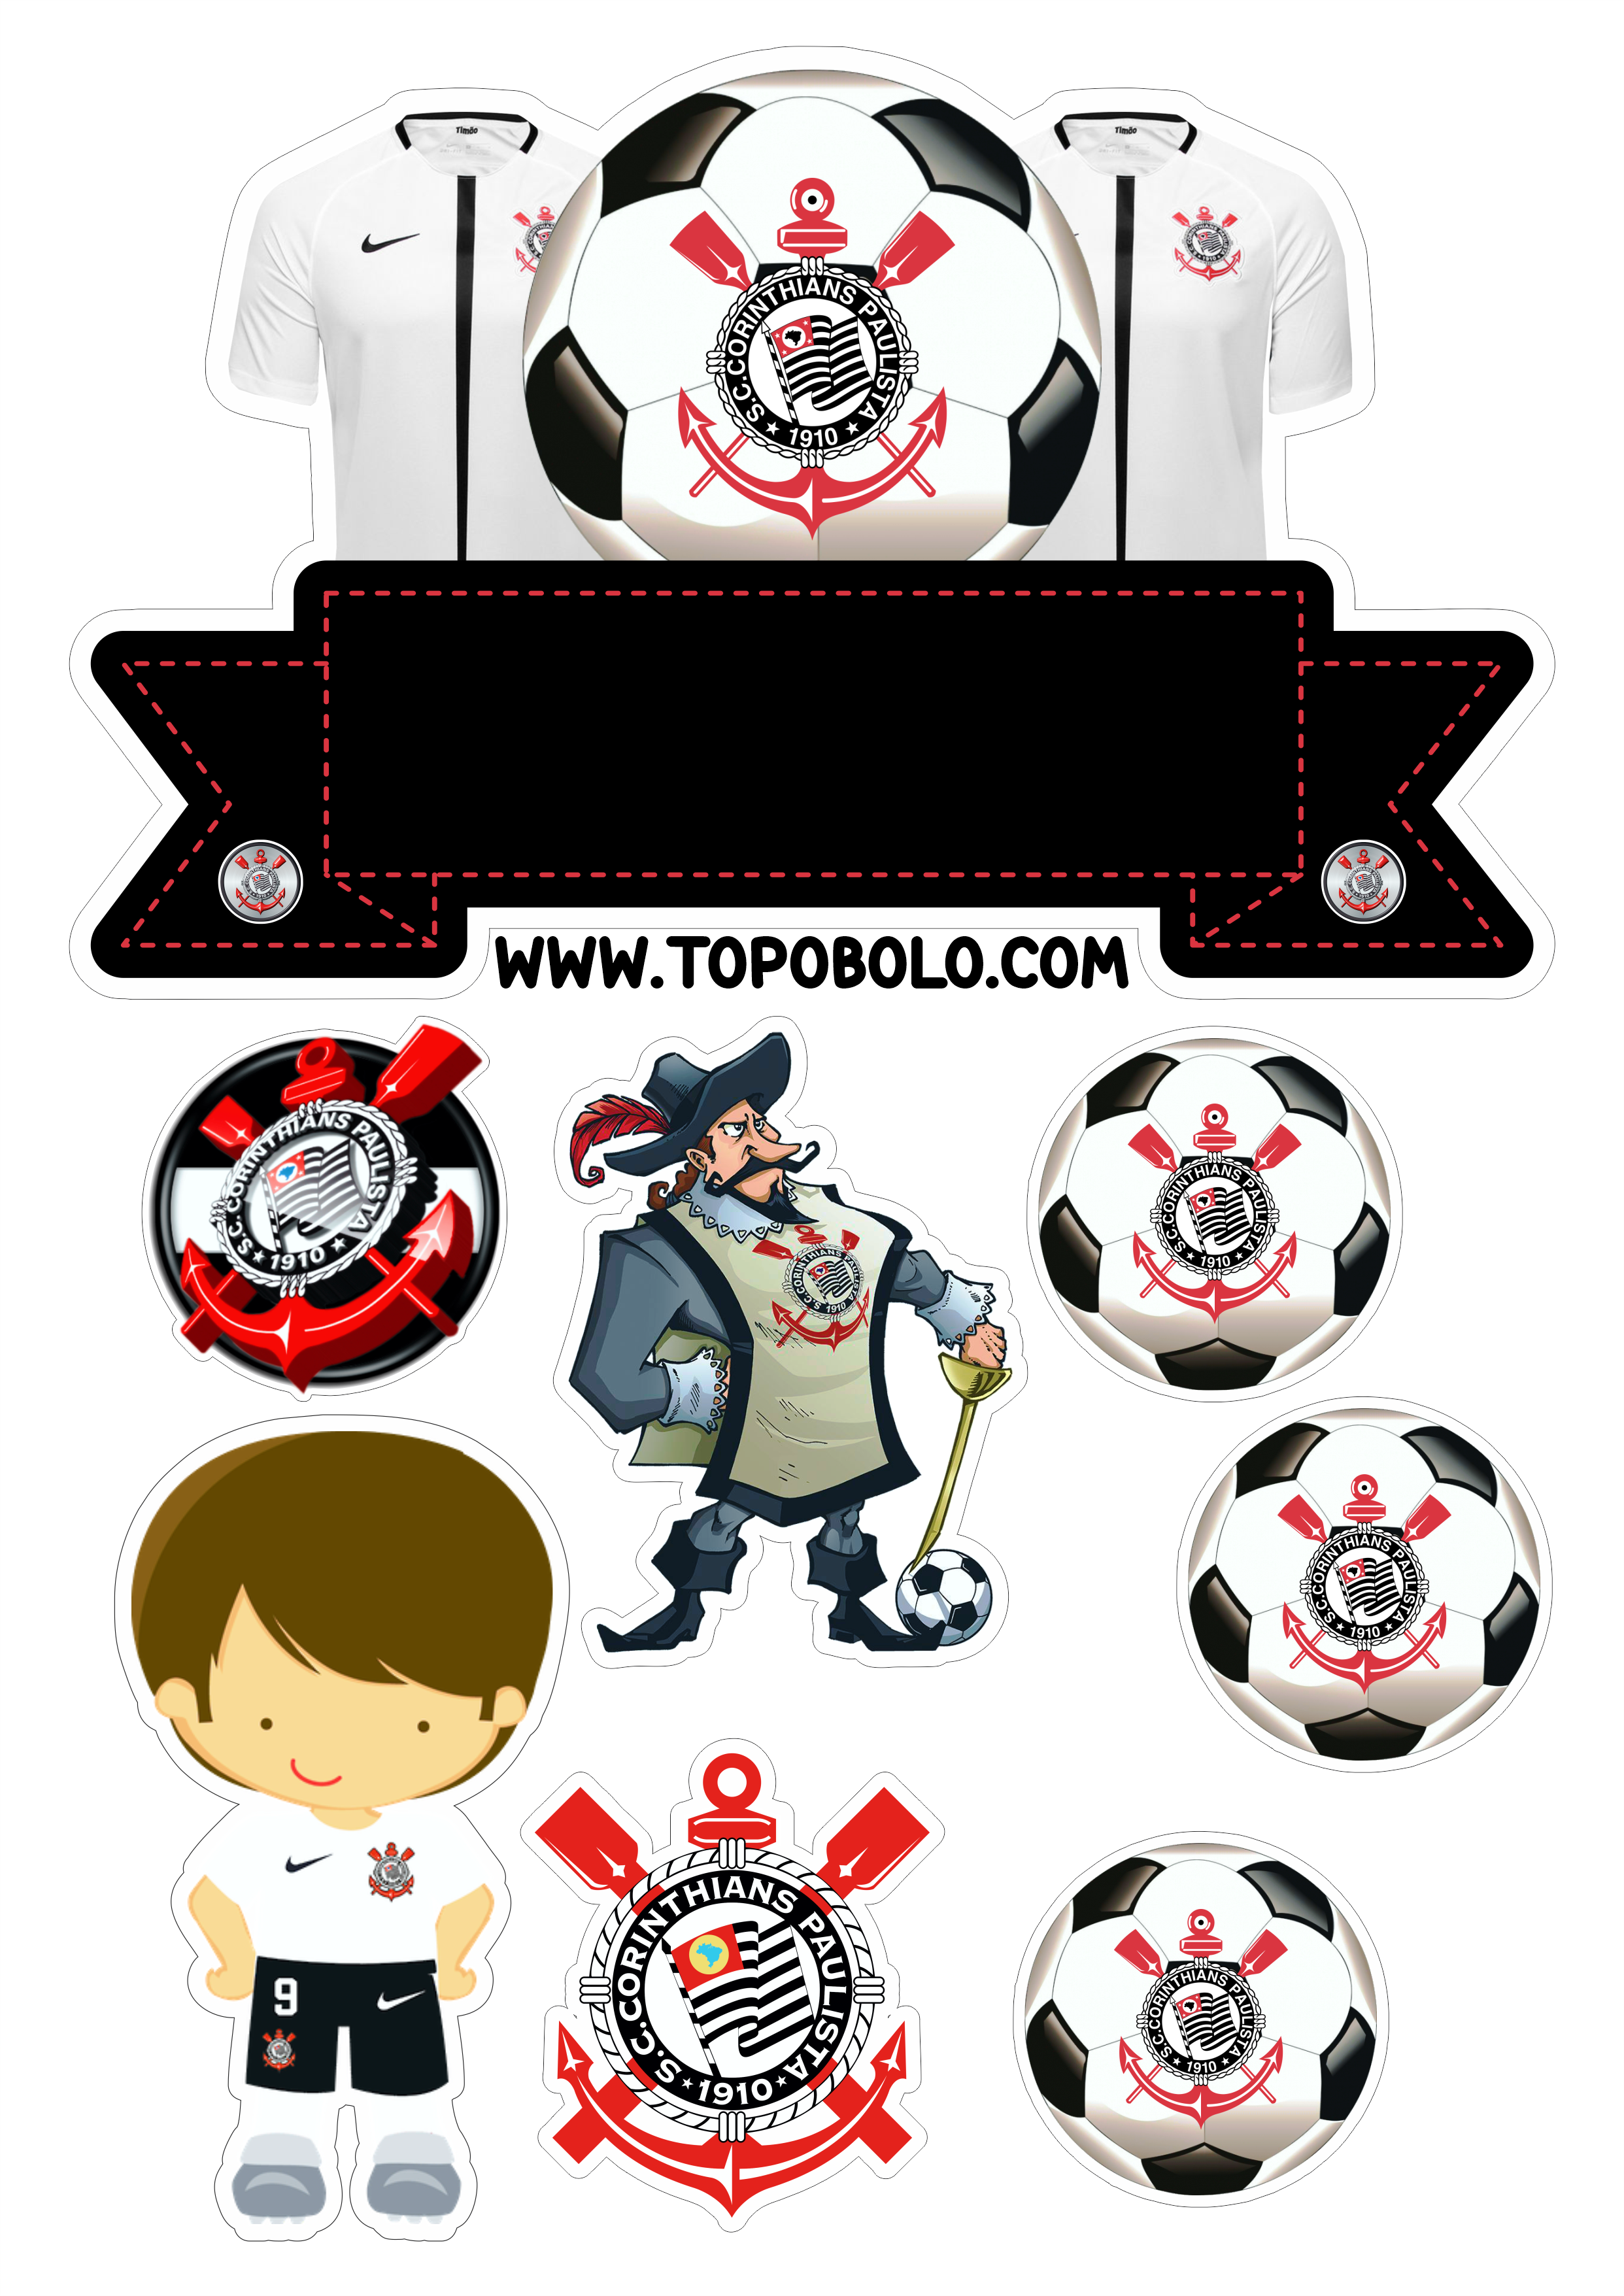 Corinthians Topo de bolo para imprimir timão futebol camiseta oficial símbolo aniversário infantil png